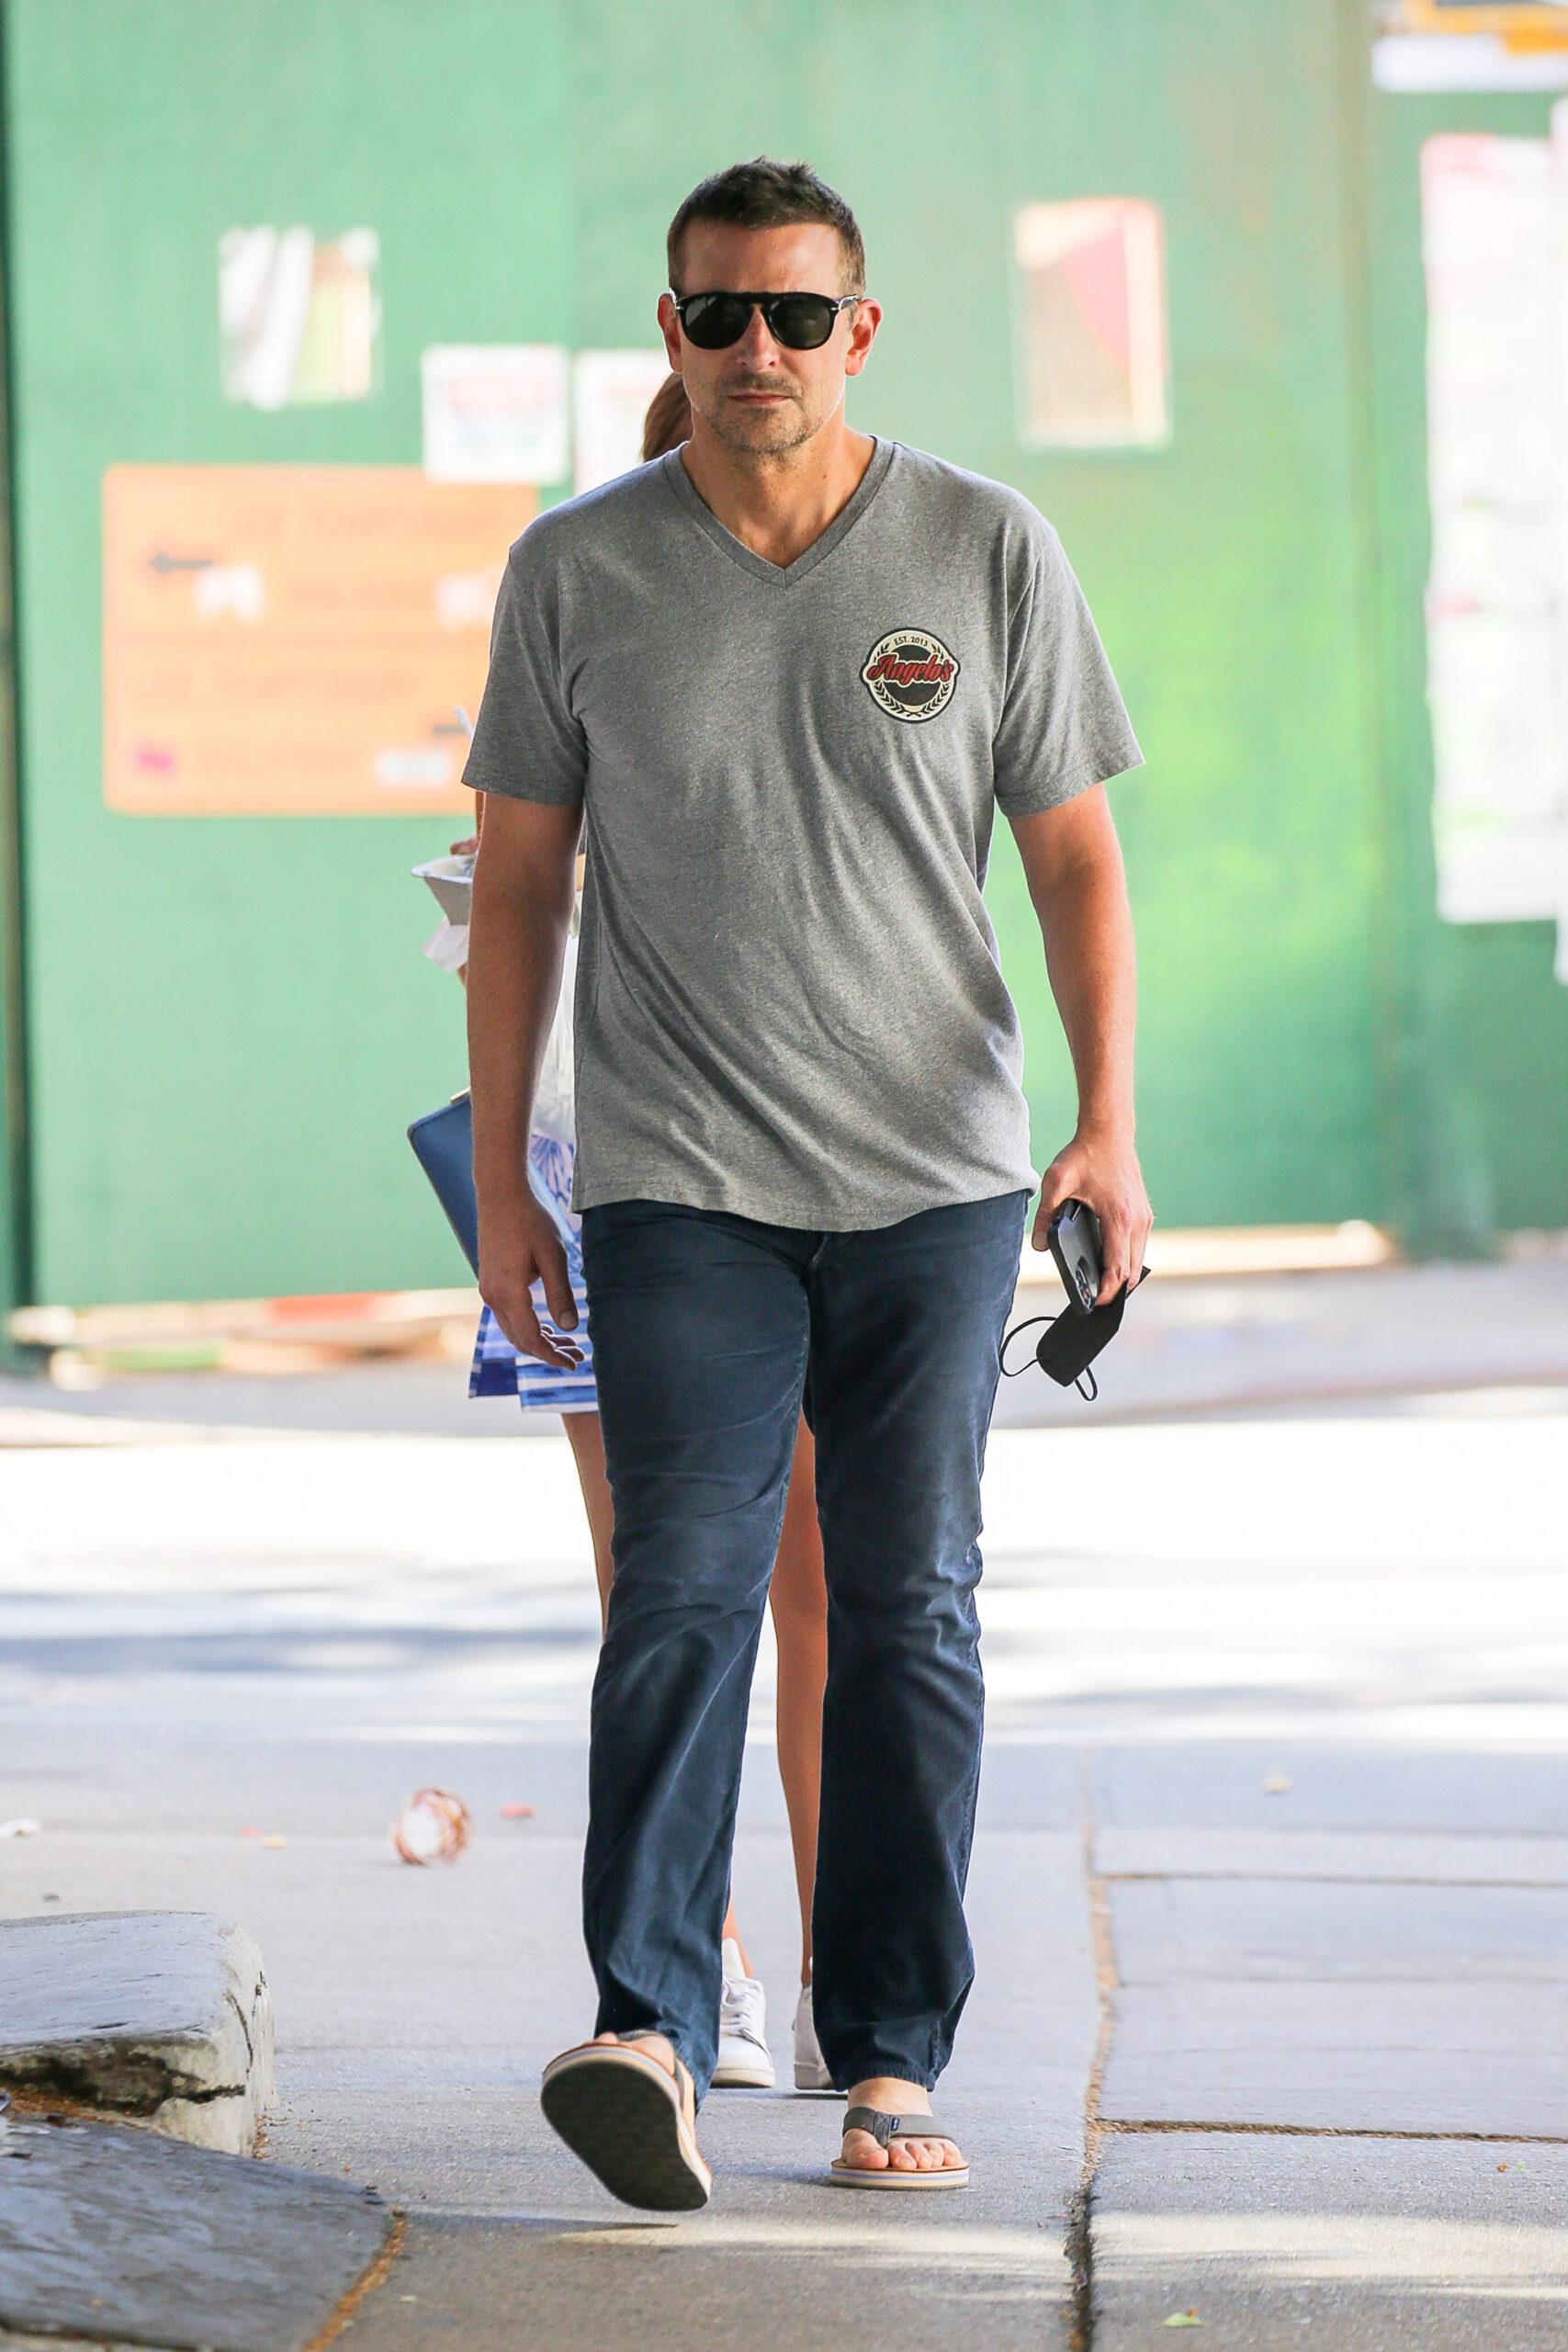 Bradley Cooper seen walking around in New York City Jun 17 2021